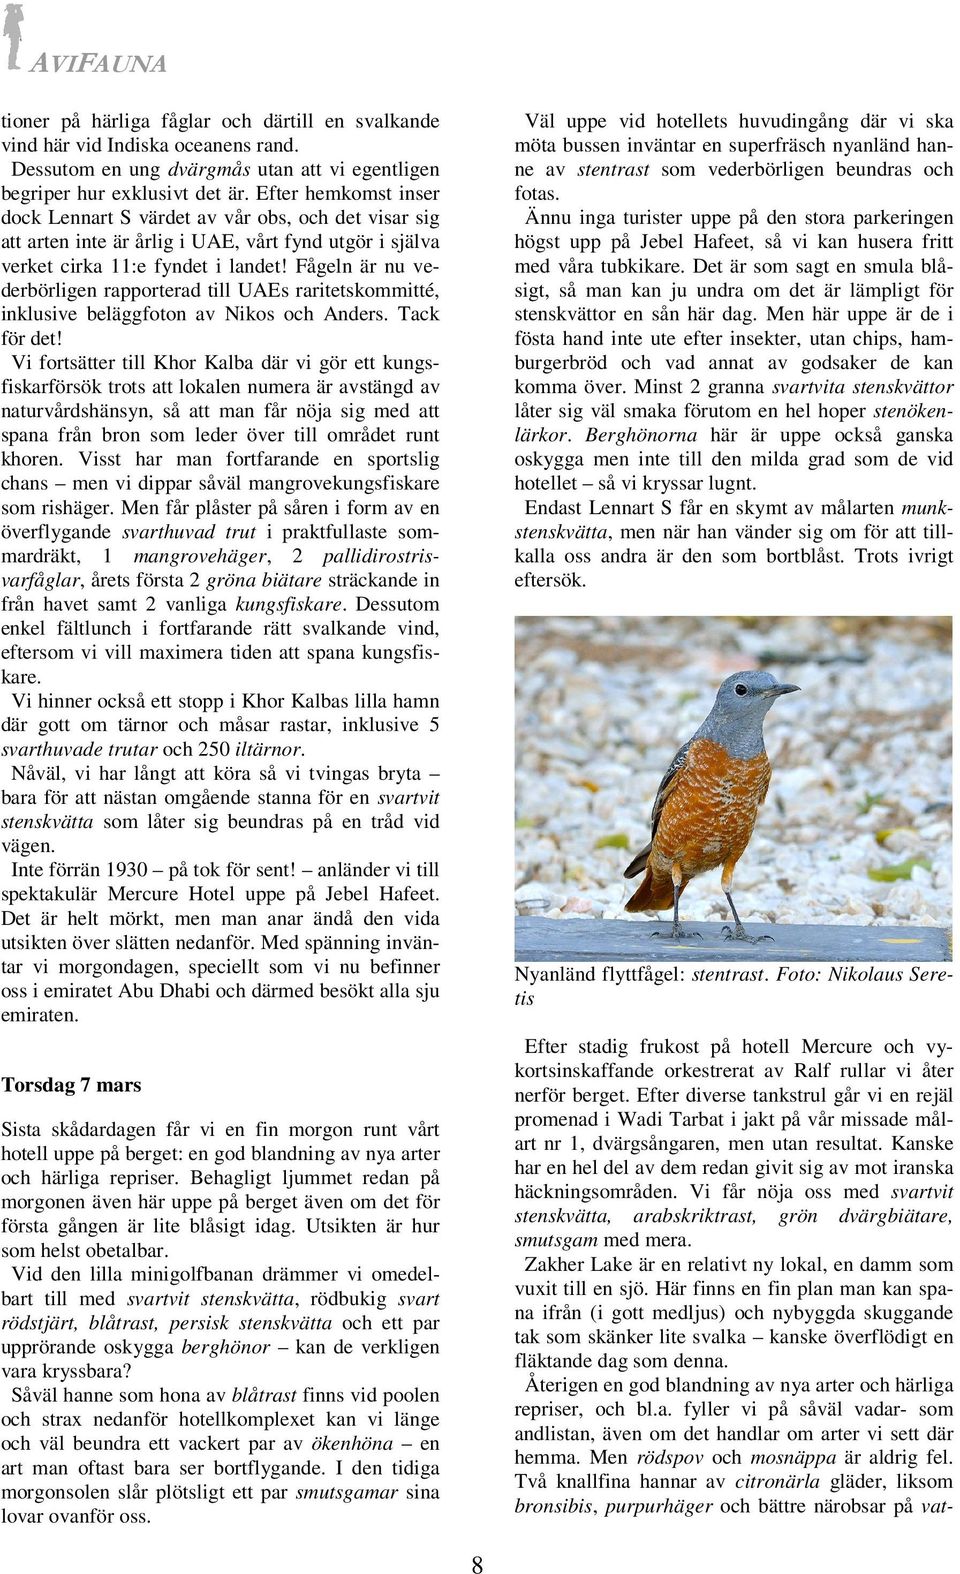 Fågeln är nu vederbörligen rapporterad till UAEs raritetskommitté, inklusive beläggfoton av Nikos och Anders. Tack för det!